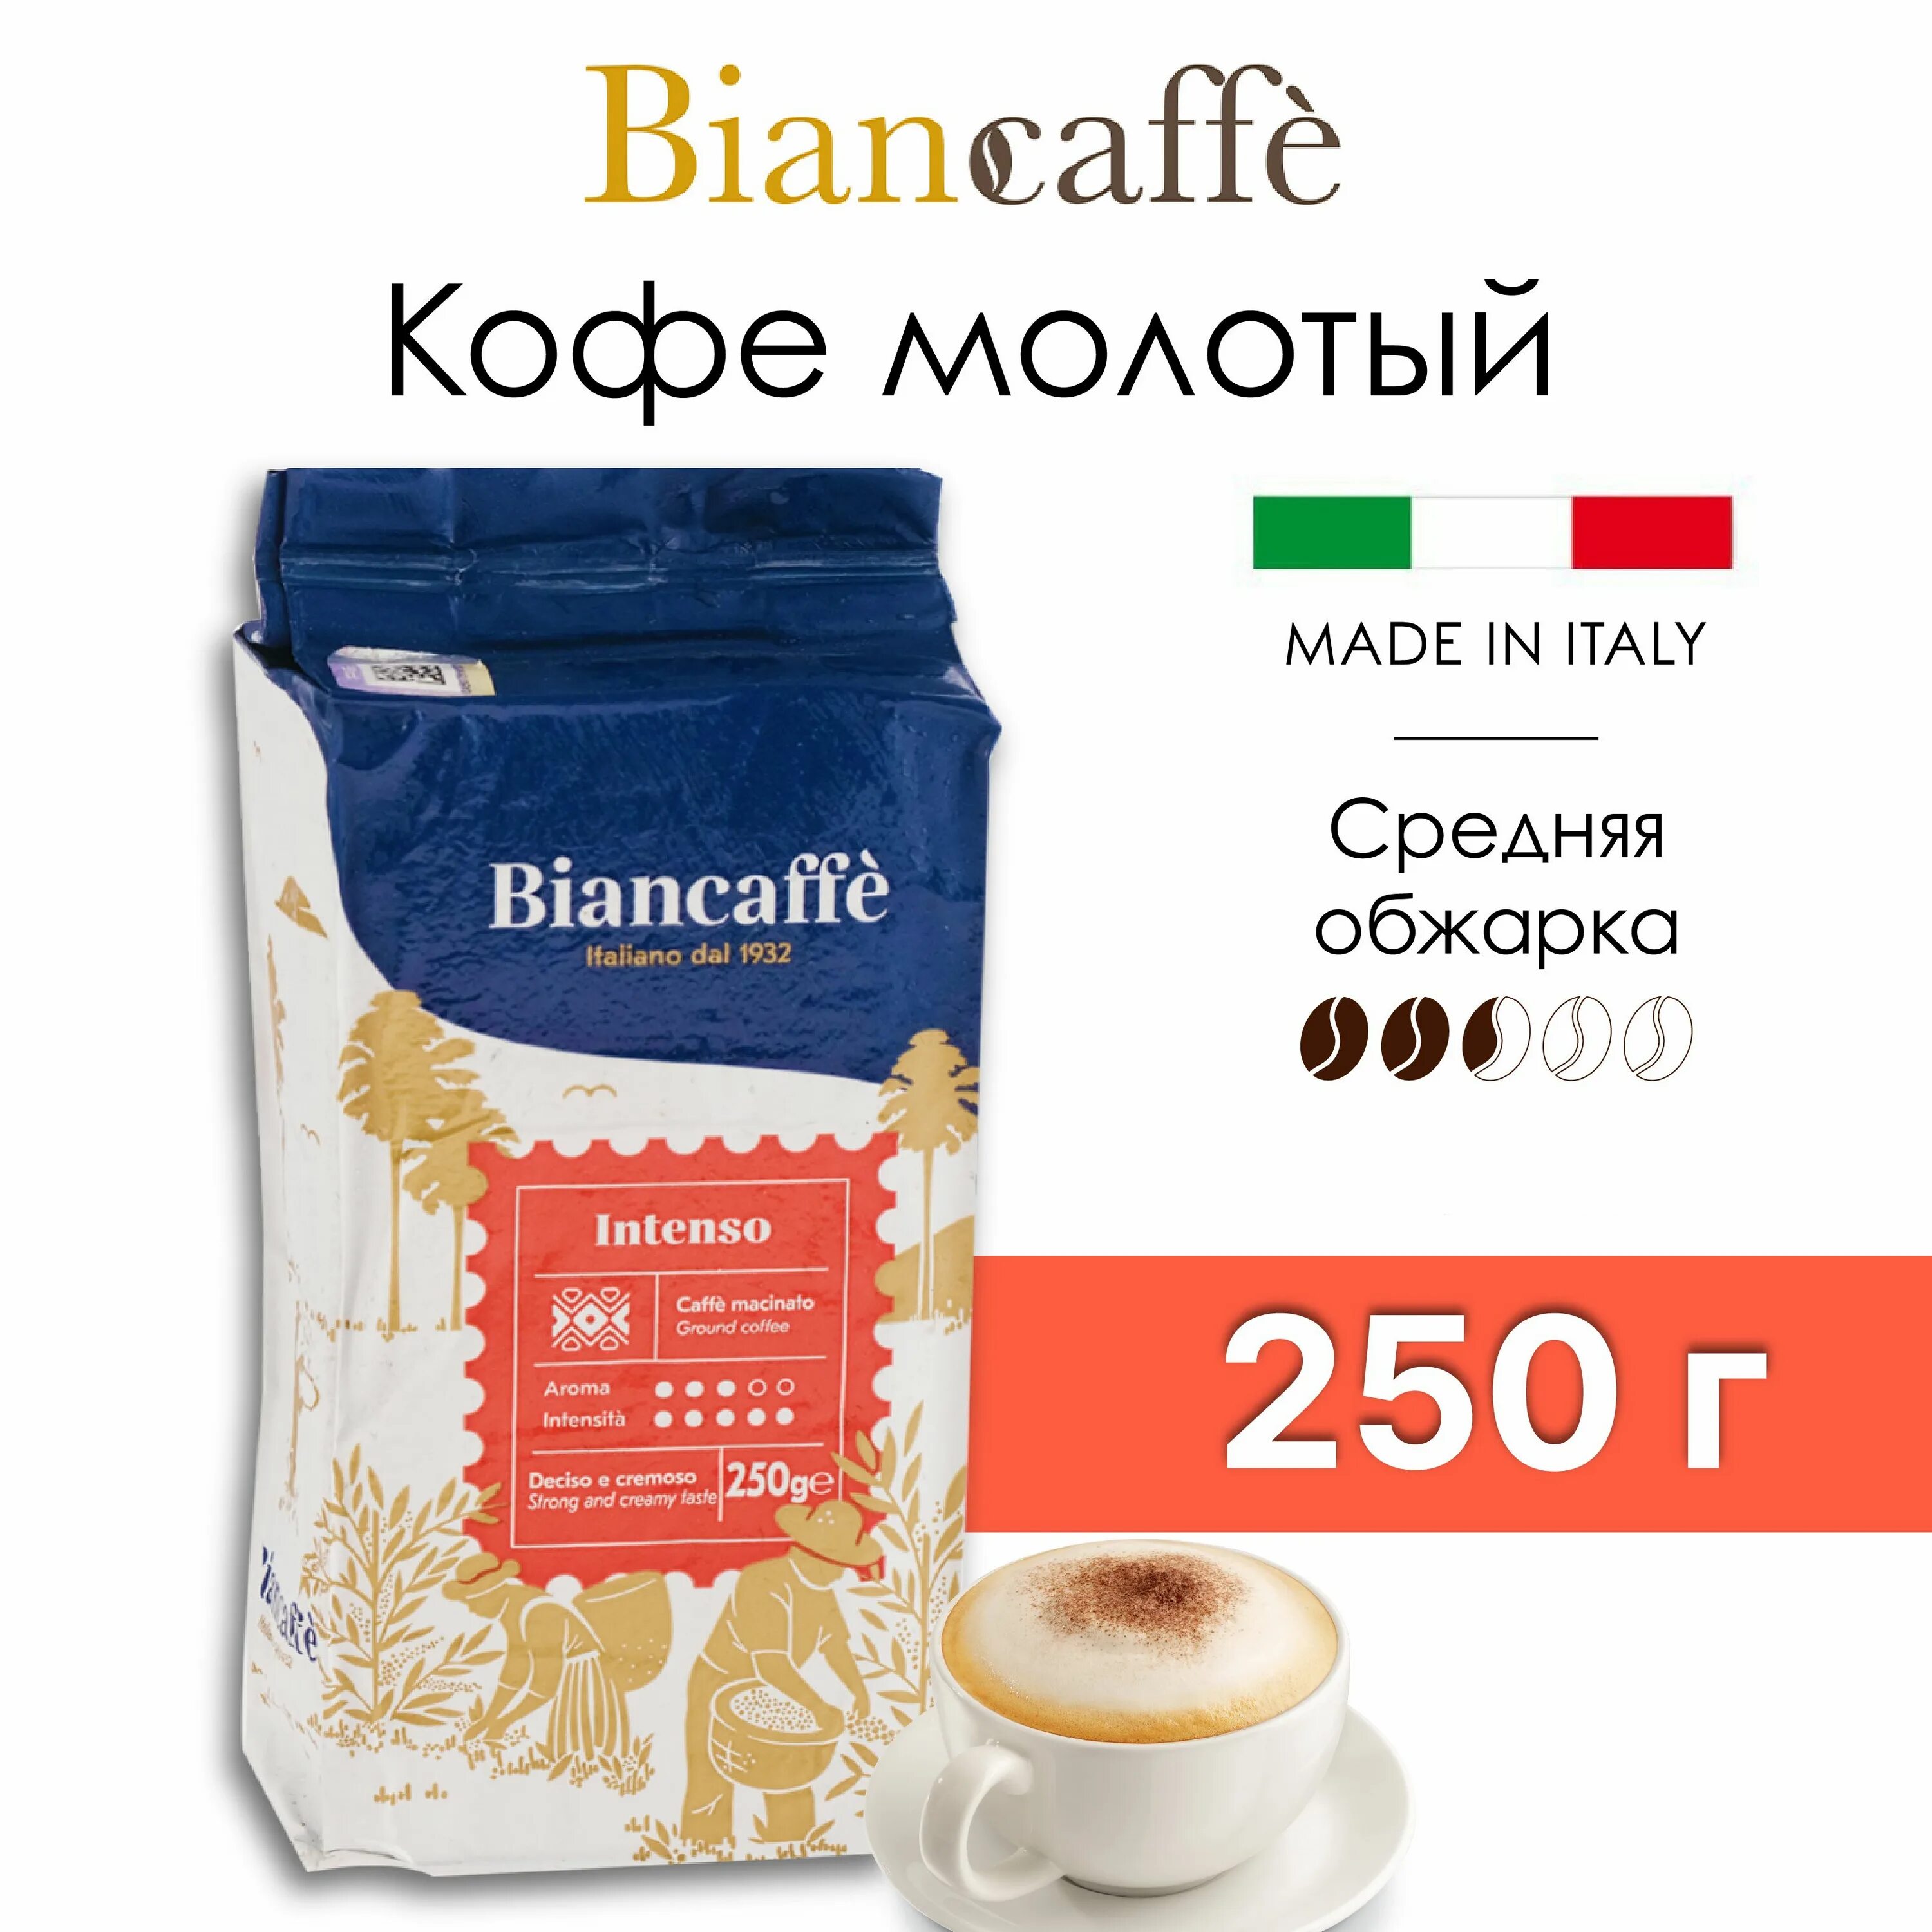 Biancaffe кофе. Biancaffe 500. Biancaffe. Кофе молотый intenso